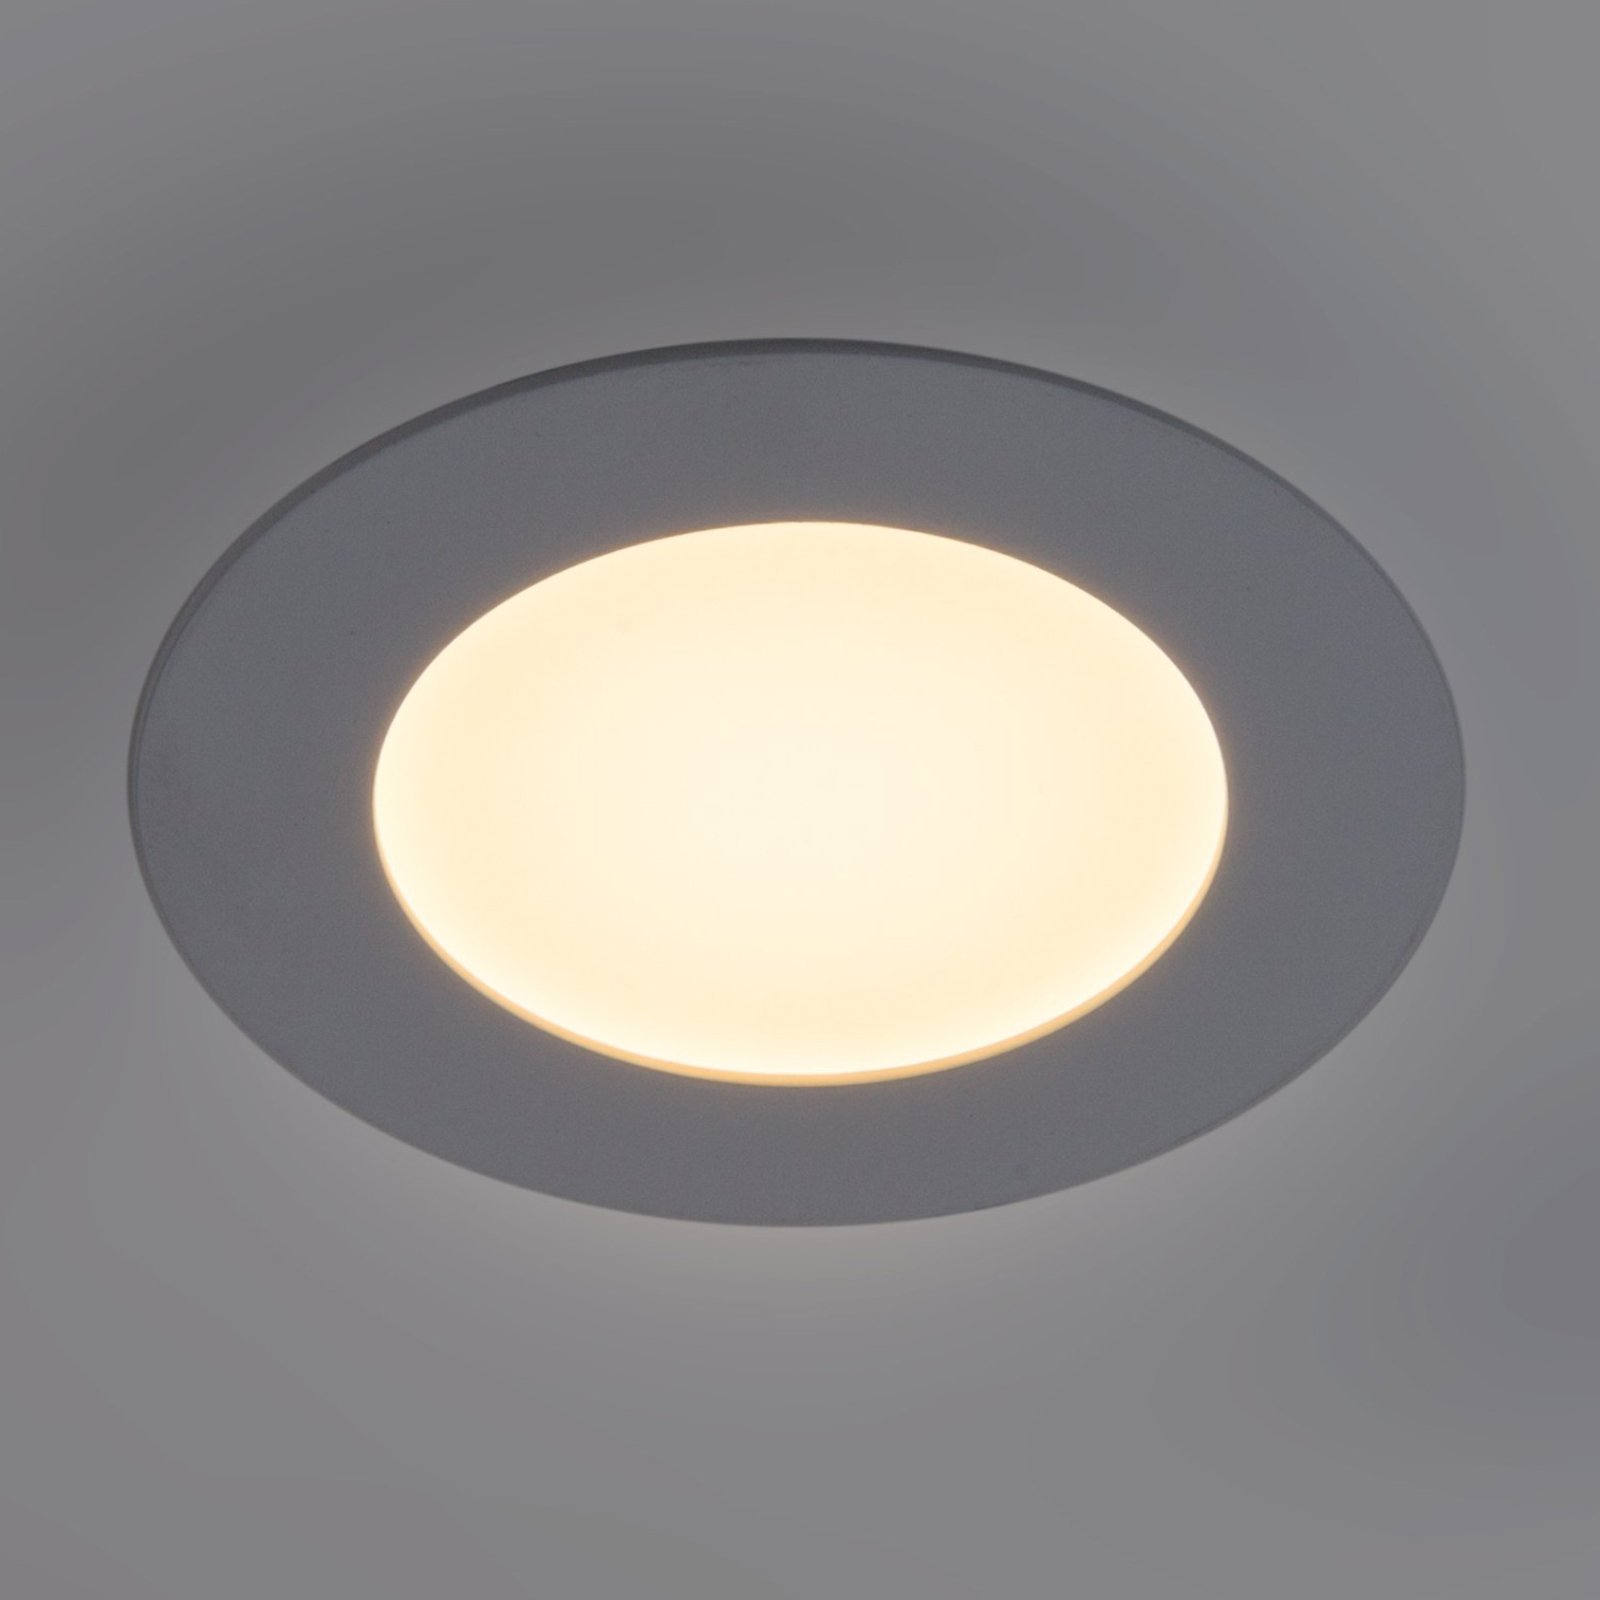 LED πάνελ Lyon στρογγυλό Ø 16,8 cm με δυνατότητα ρύθμισης φωτισμού